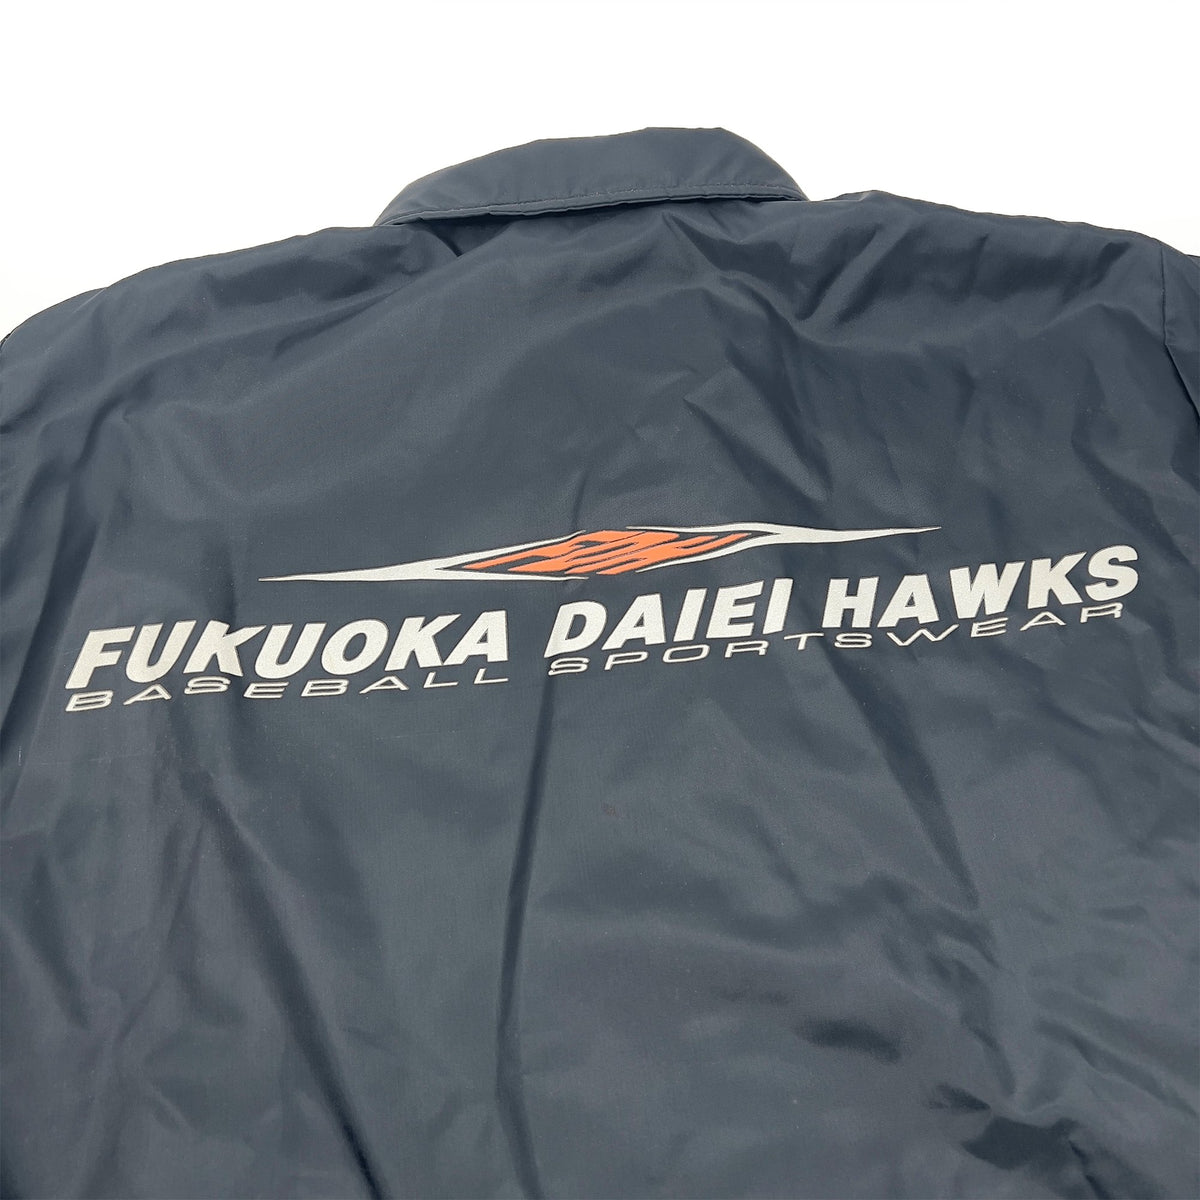 New Vintage Japan NPB Fukuoka Daiei Hawks Coaches Jacket Black - Sugoi JDM